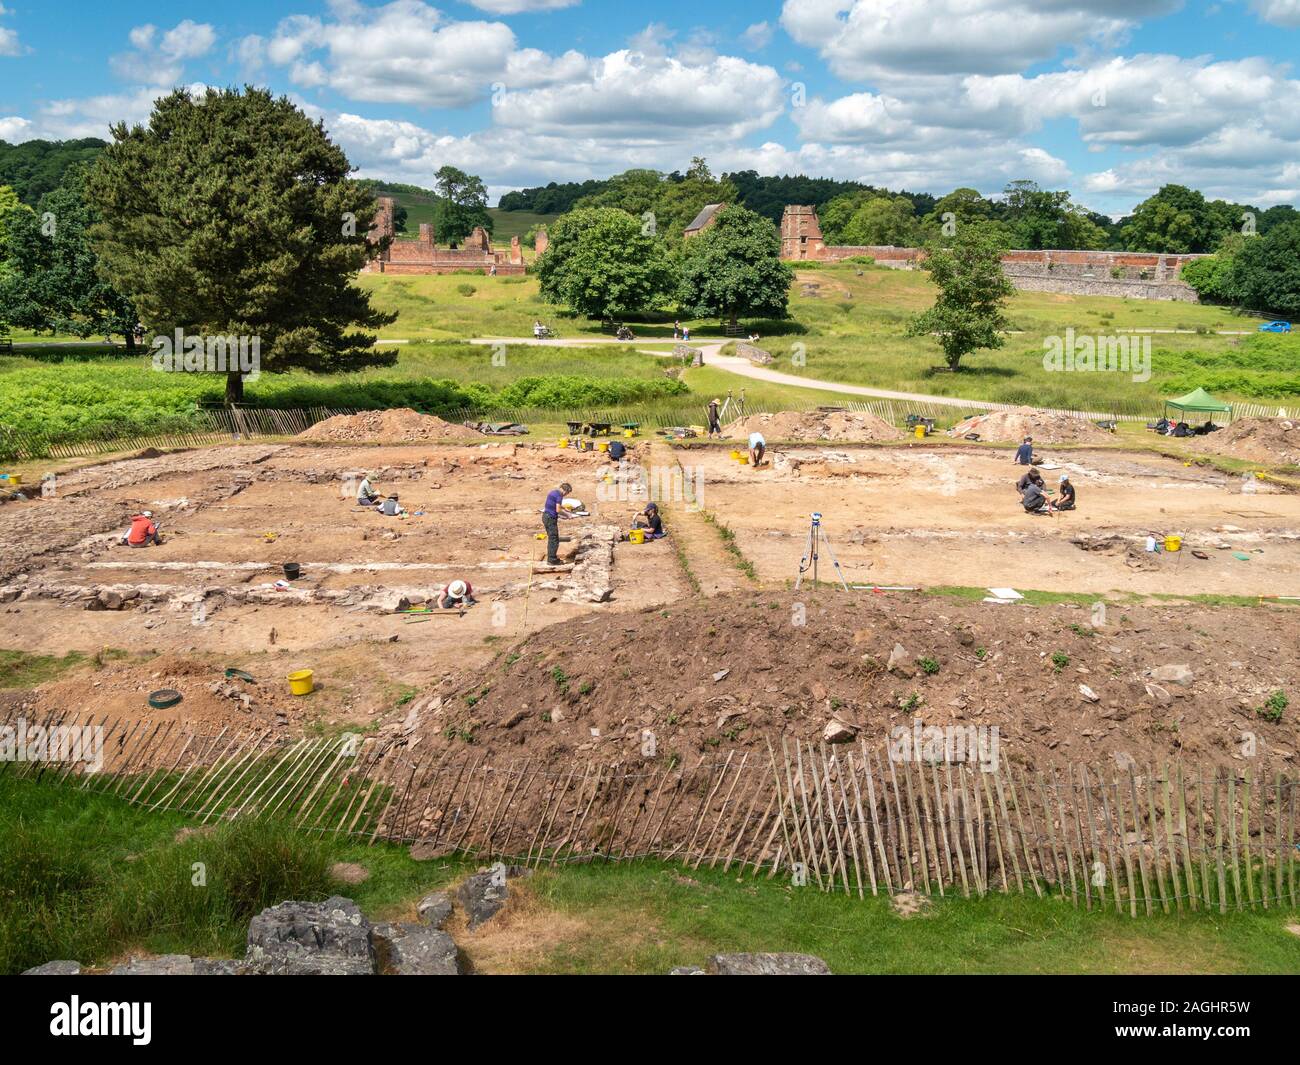 Site de fouilles archéologiques par des étudiants en archéologie de l'Université de Leicester sur une excursion à Bradgate Park, Leicestershire, England, UK Banque D'Images